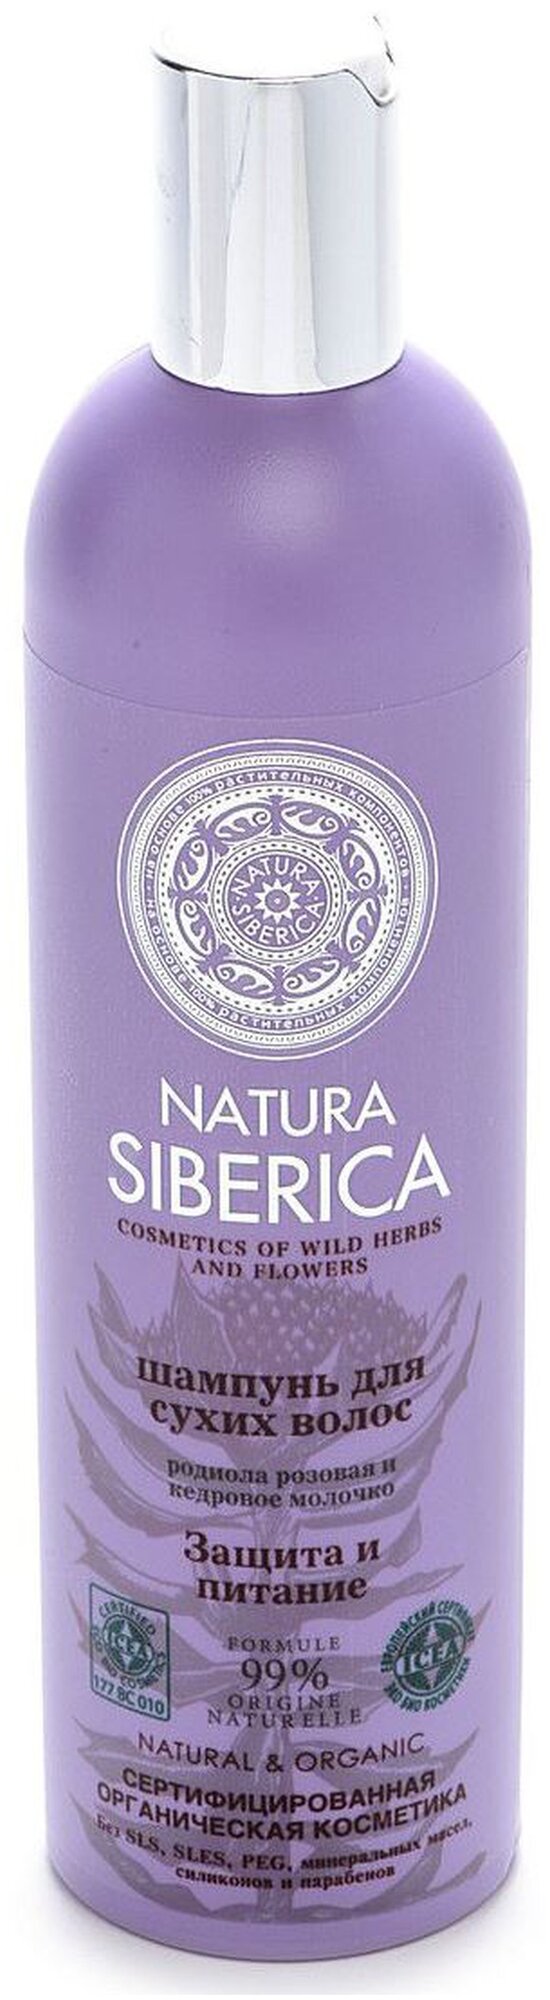 Natura Siberica шампунь Защита и питание для сухих волос